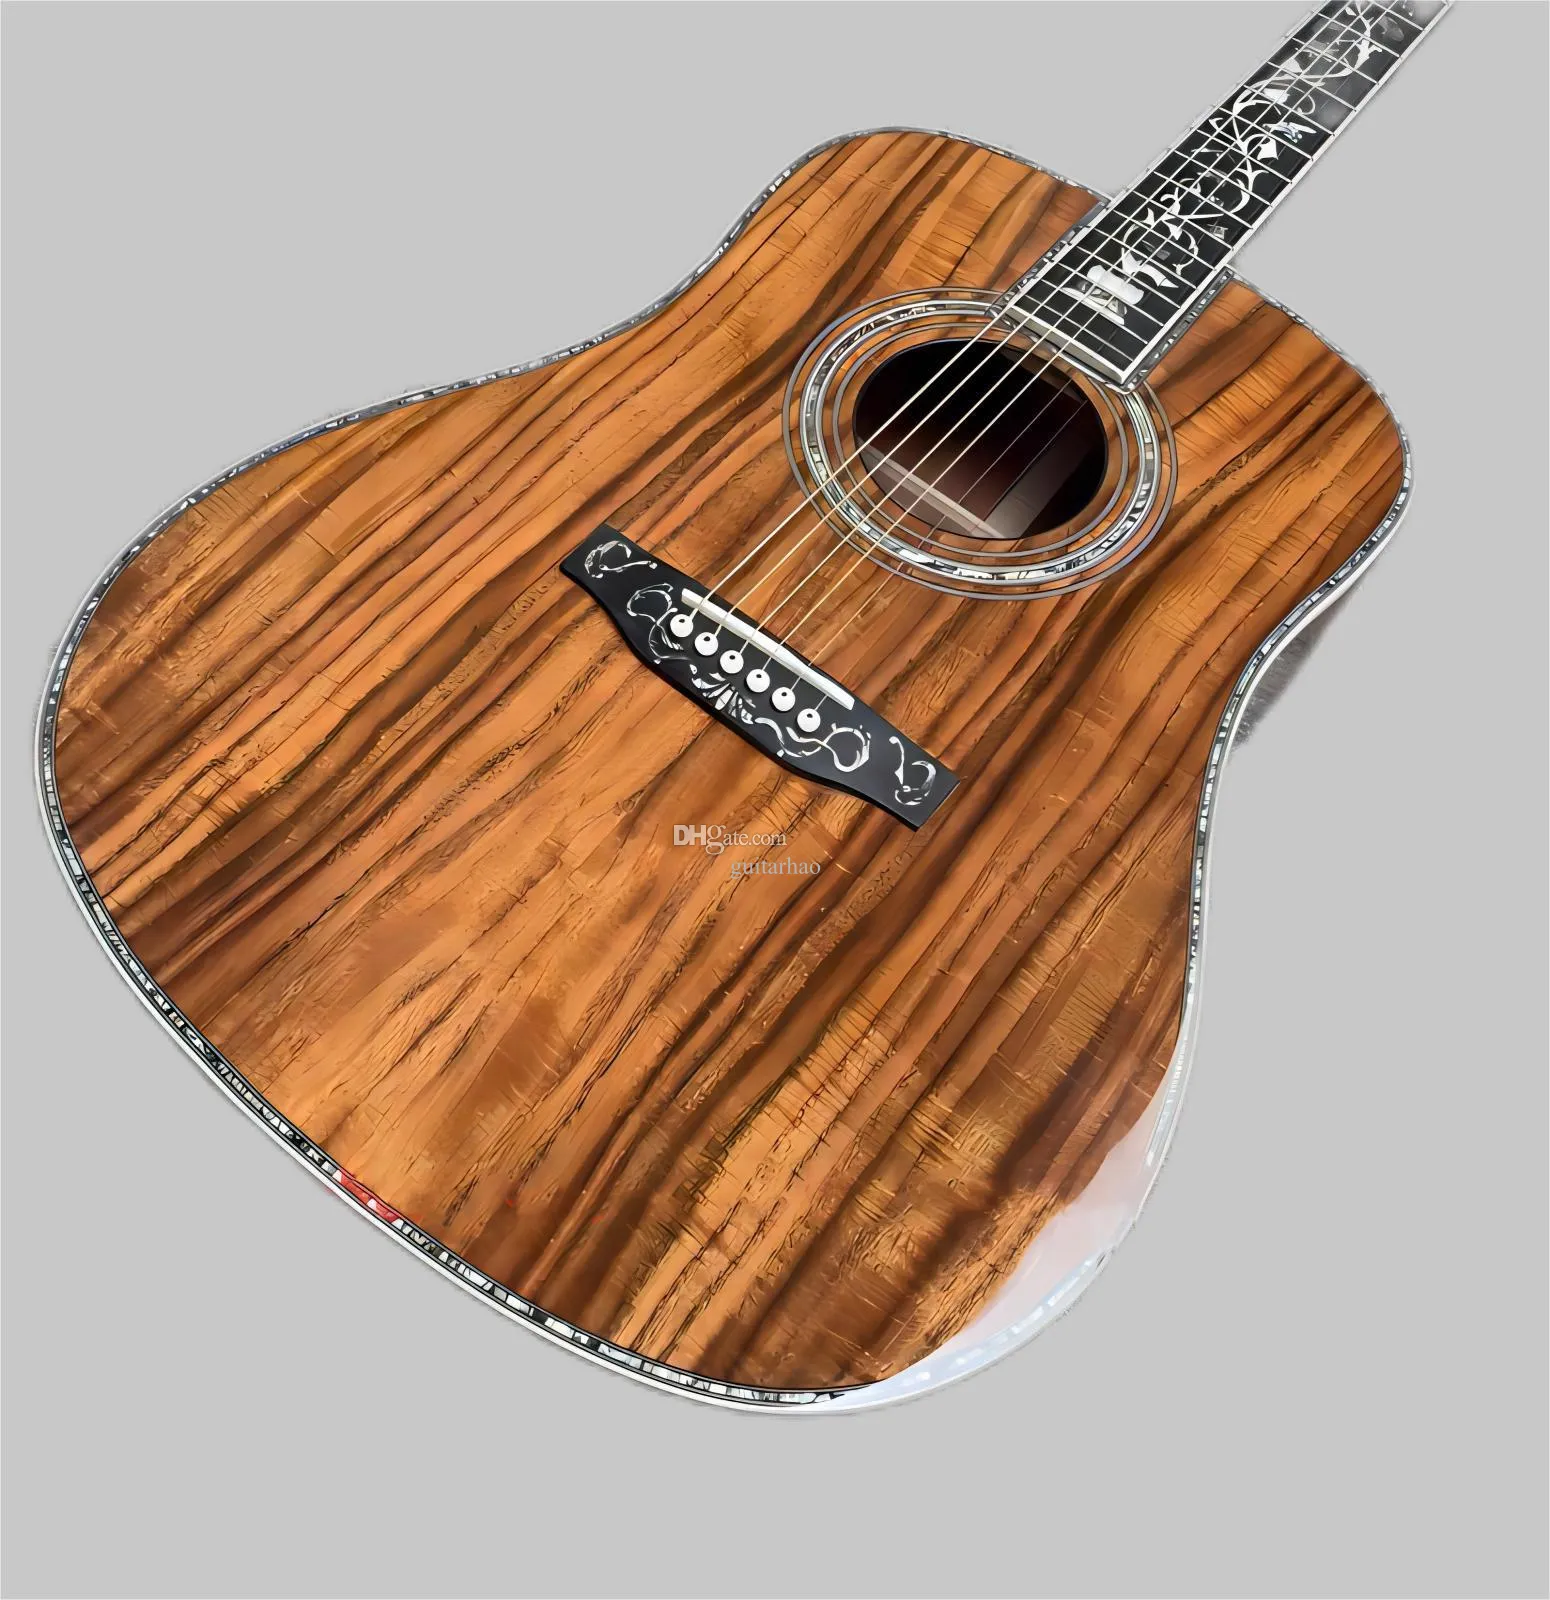 Guitarra acústica de alta qualidade de Deluxe KOA, braço de ébano e ponte, encadernação de casca de abalone e mosaico